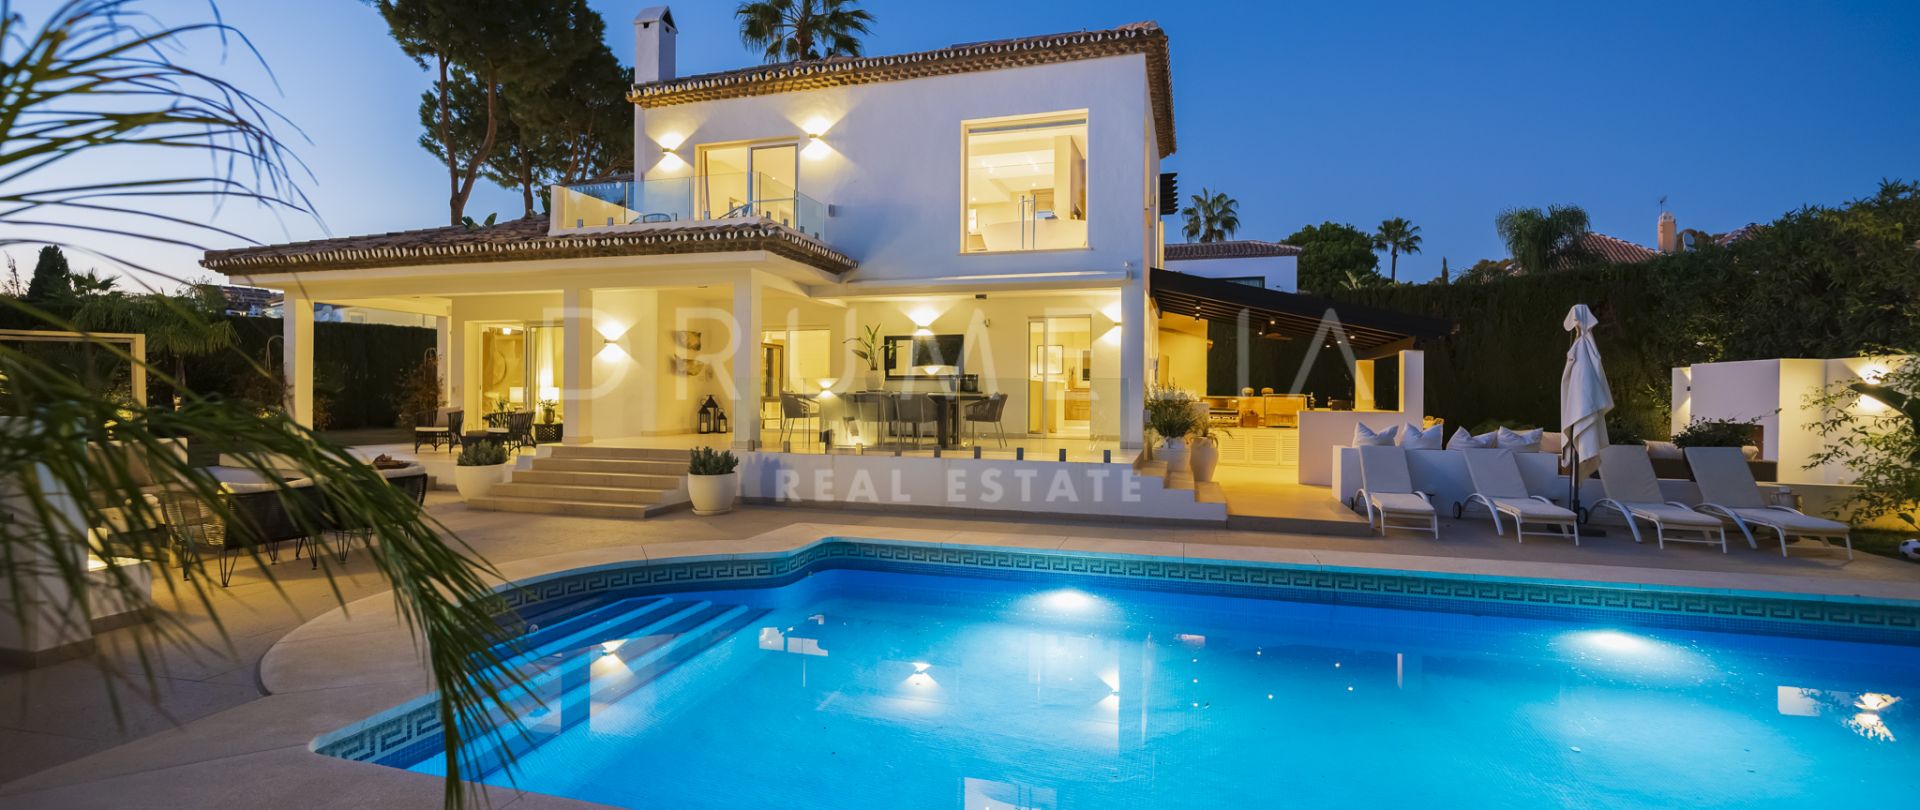 Вилла в андалузском стиле с современным и роскошным интерьером в Marbella Country Club